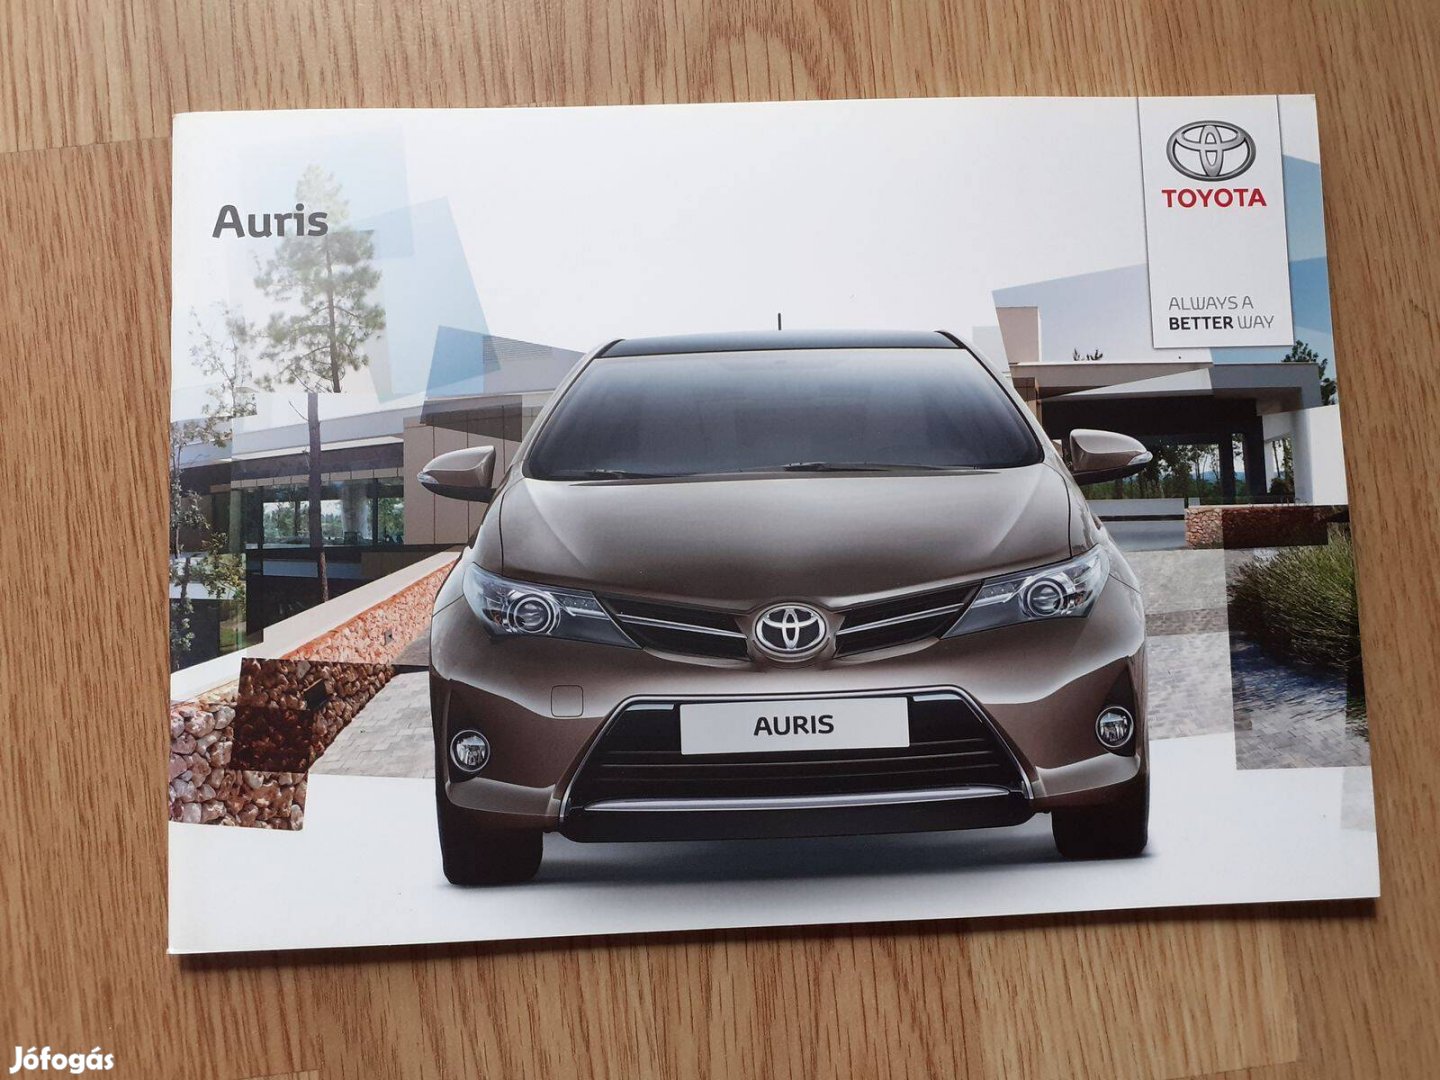 Toyota Auris prospektus - 2013, magyar nyelvű